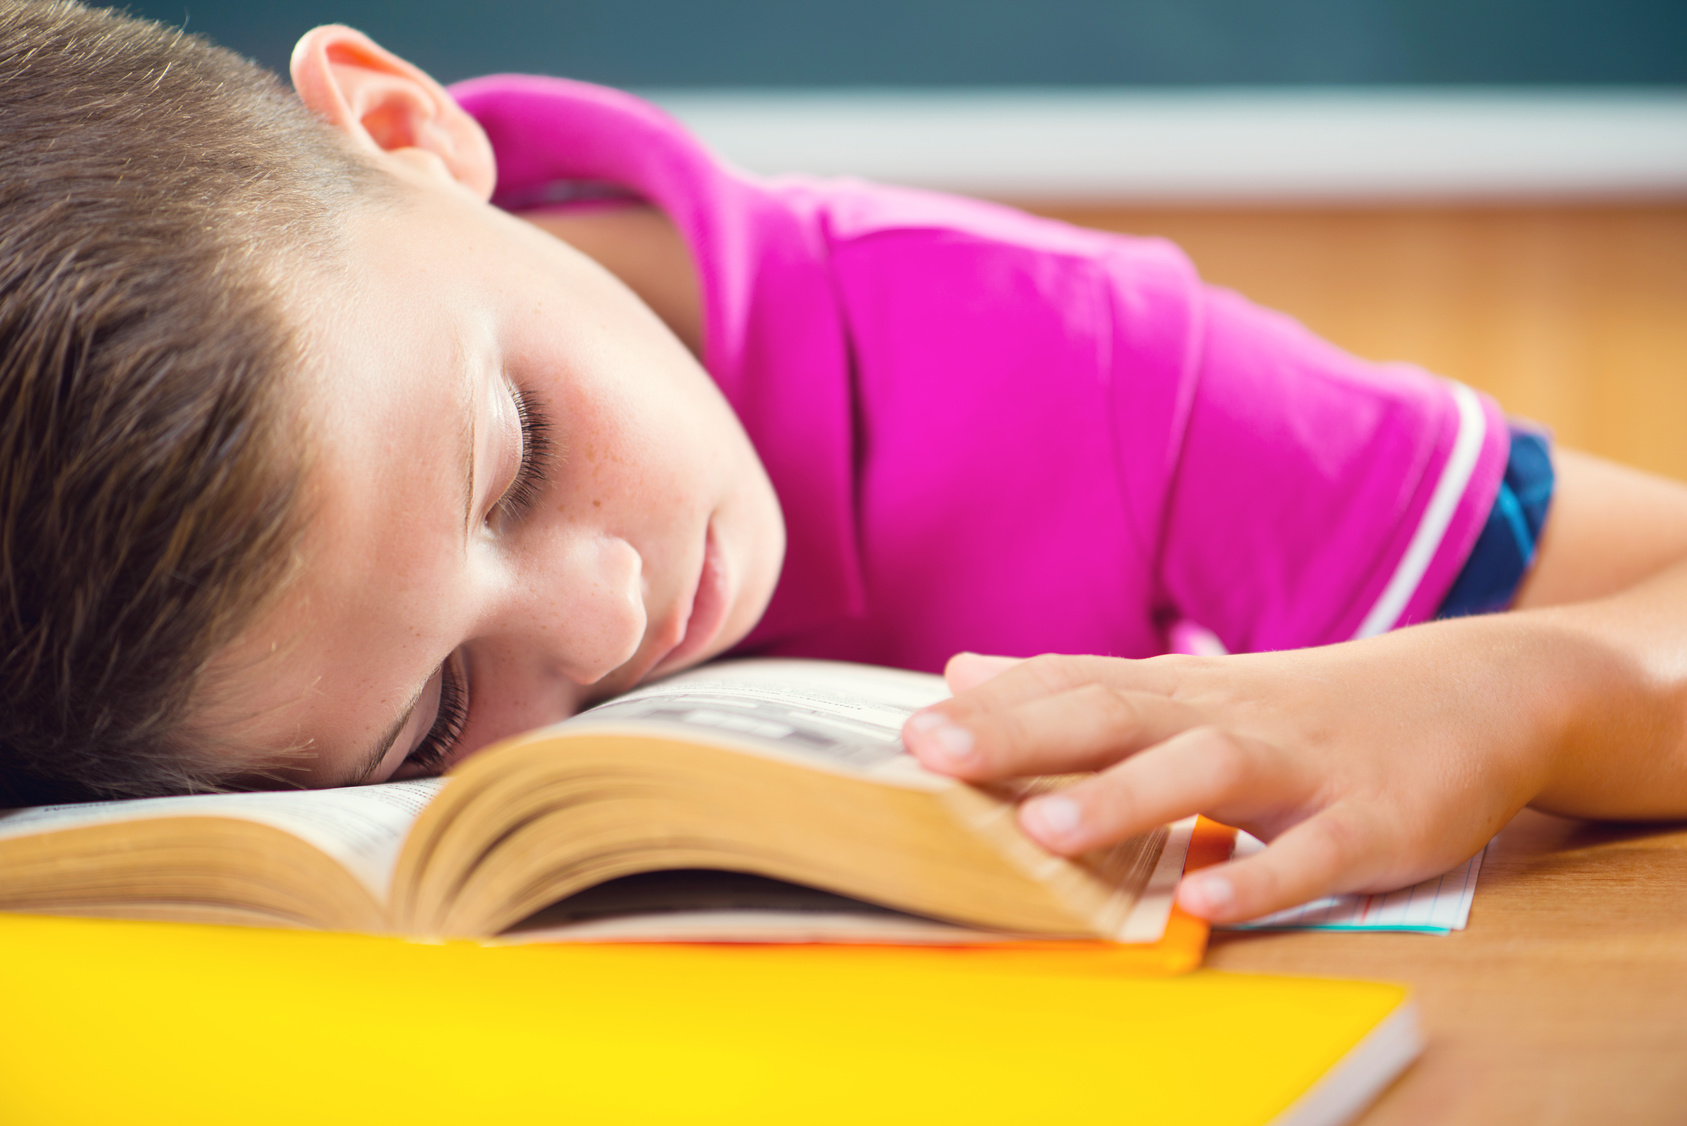 Cet élève endormi pourrait bien être en train de réviser ses leçons, à condition qu'il entende celles-ci répétées à l'oral. © spass, Fotolia